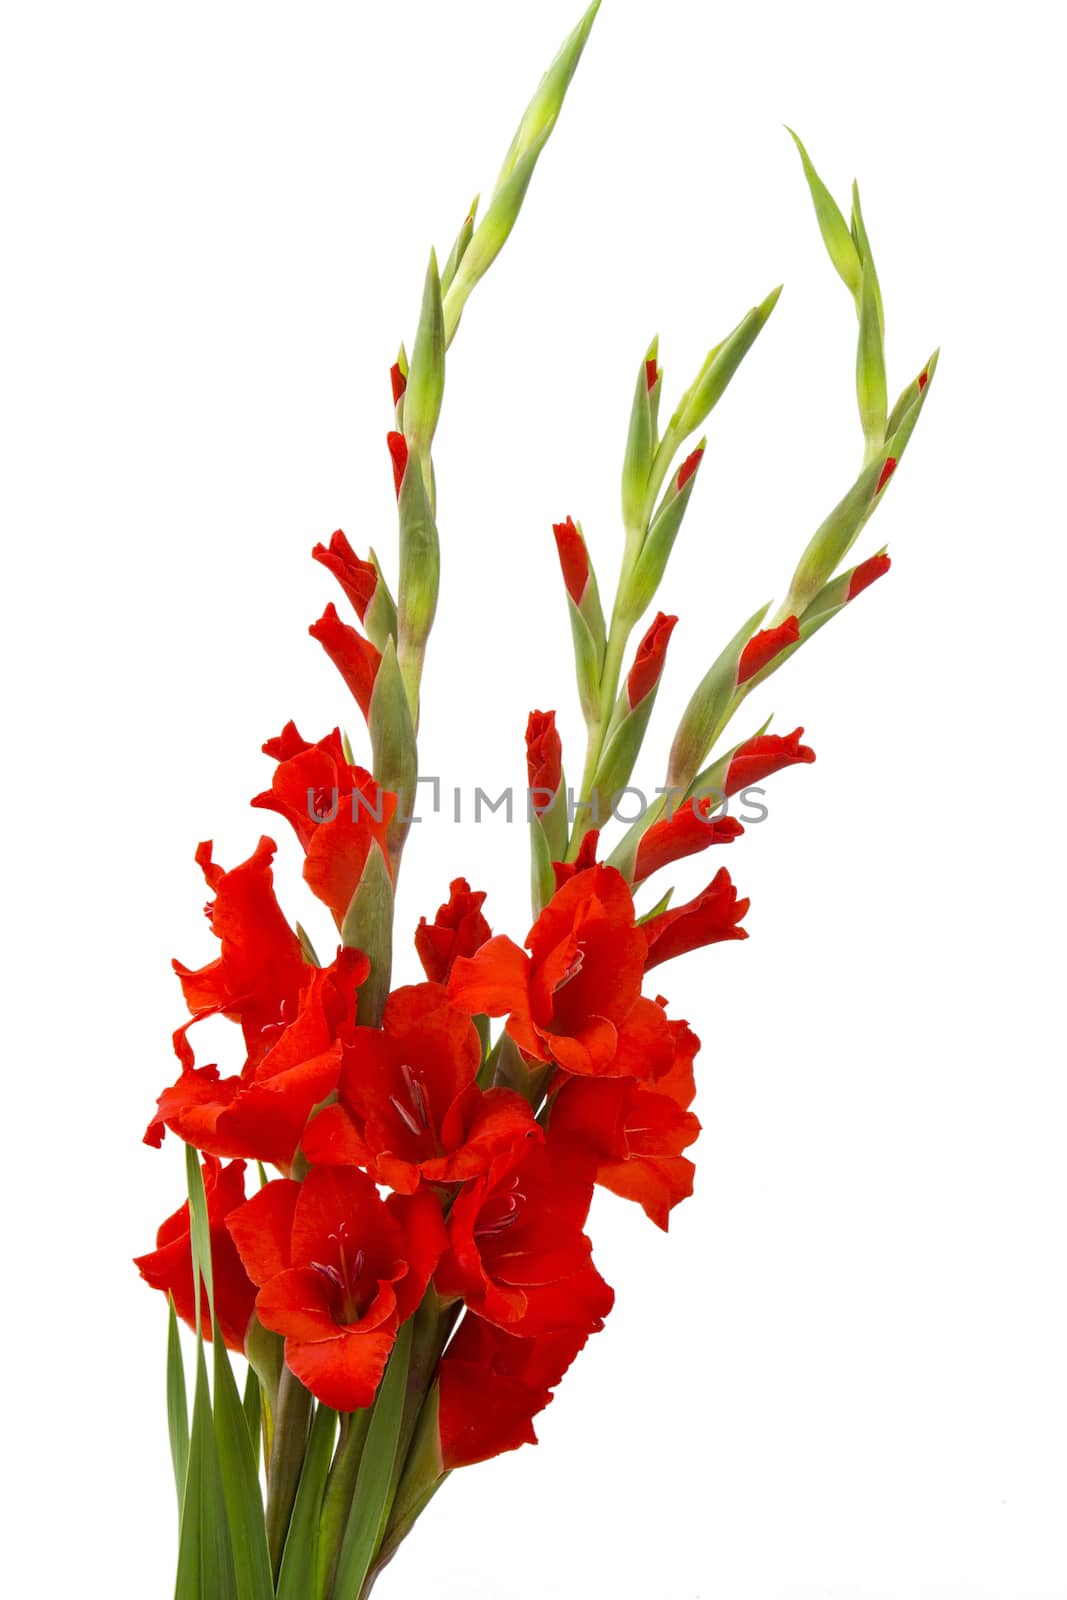 red gladiolus flowers by miradrozdowski